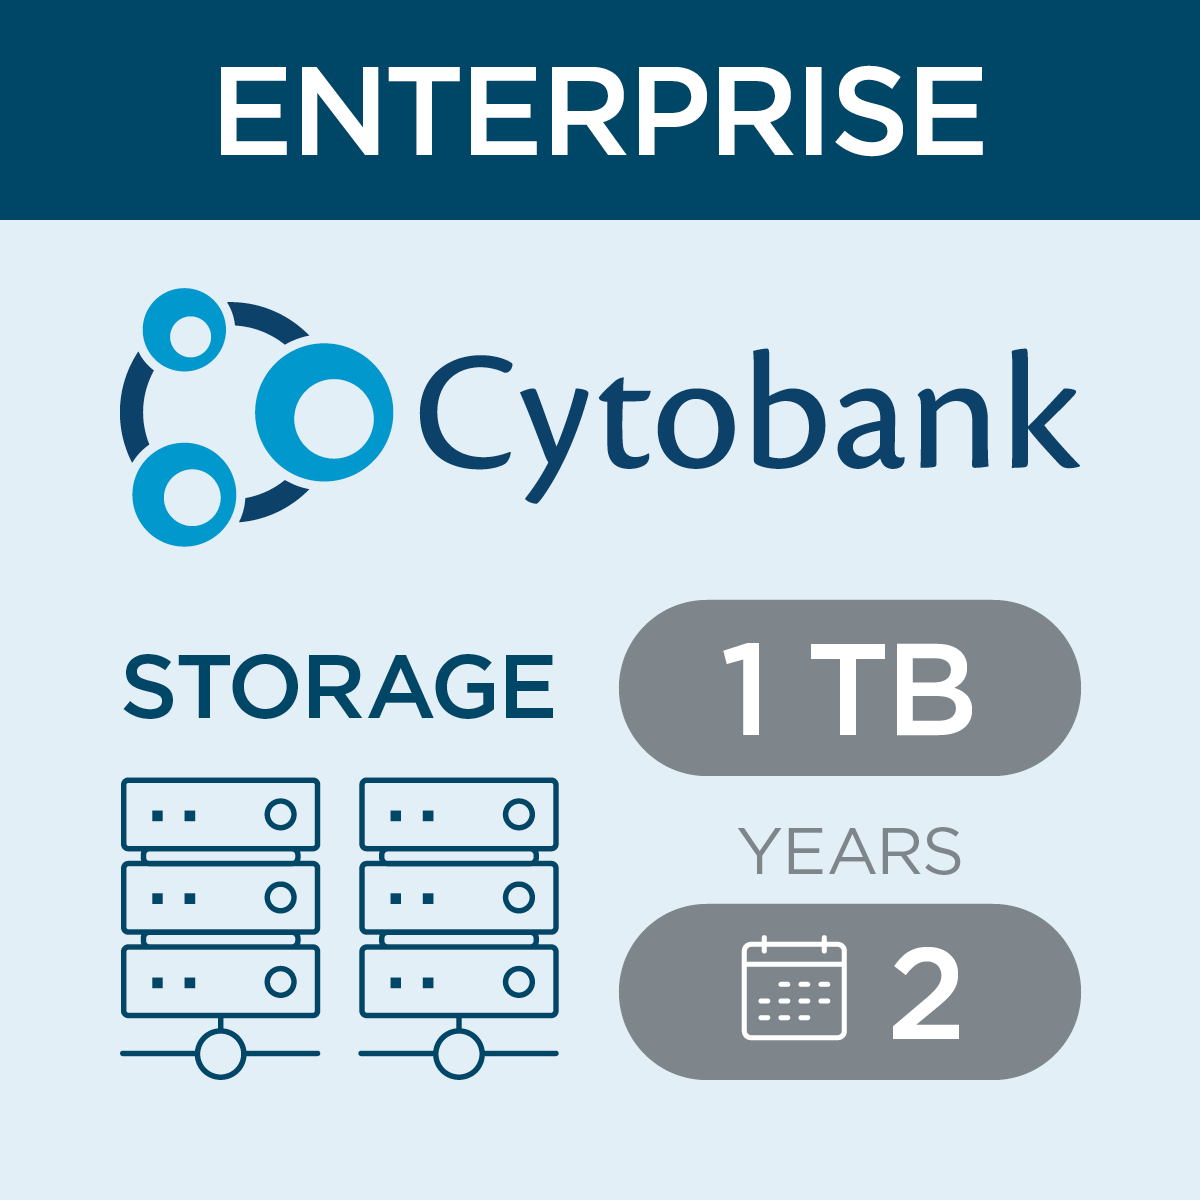 c47417, Cytobank Storage per TB for Enterprise, 2-year